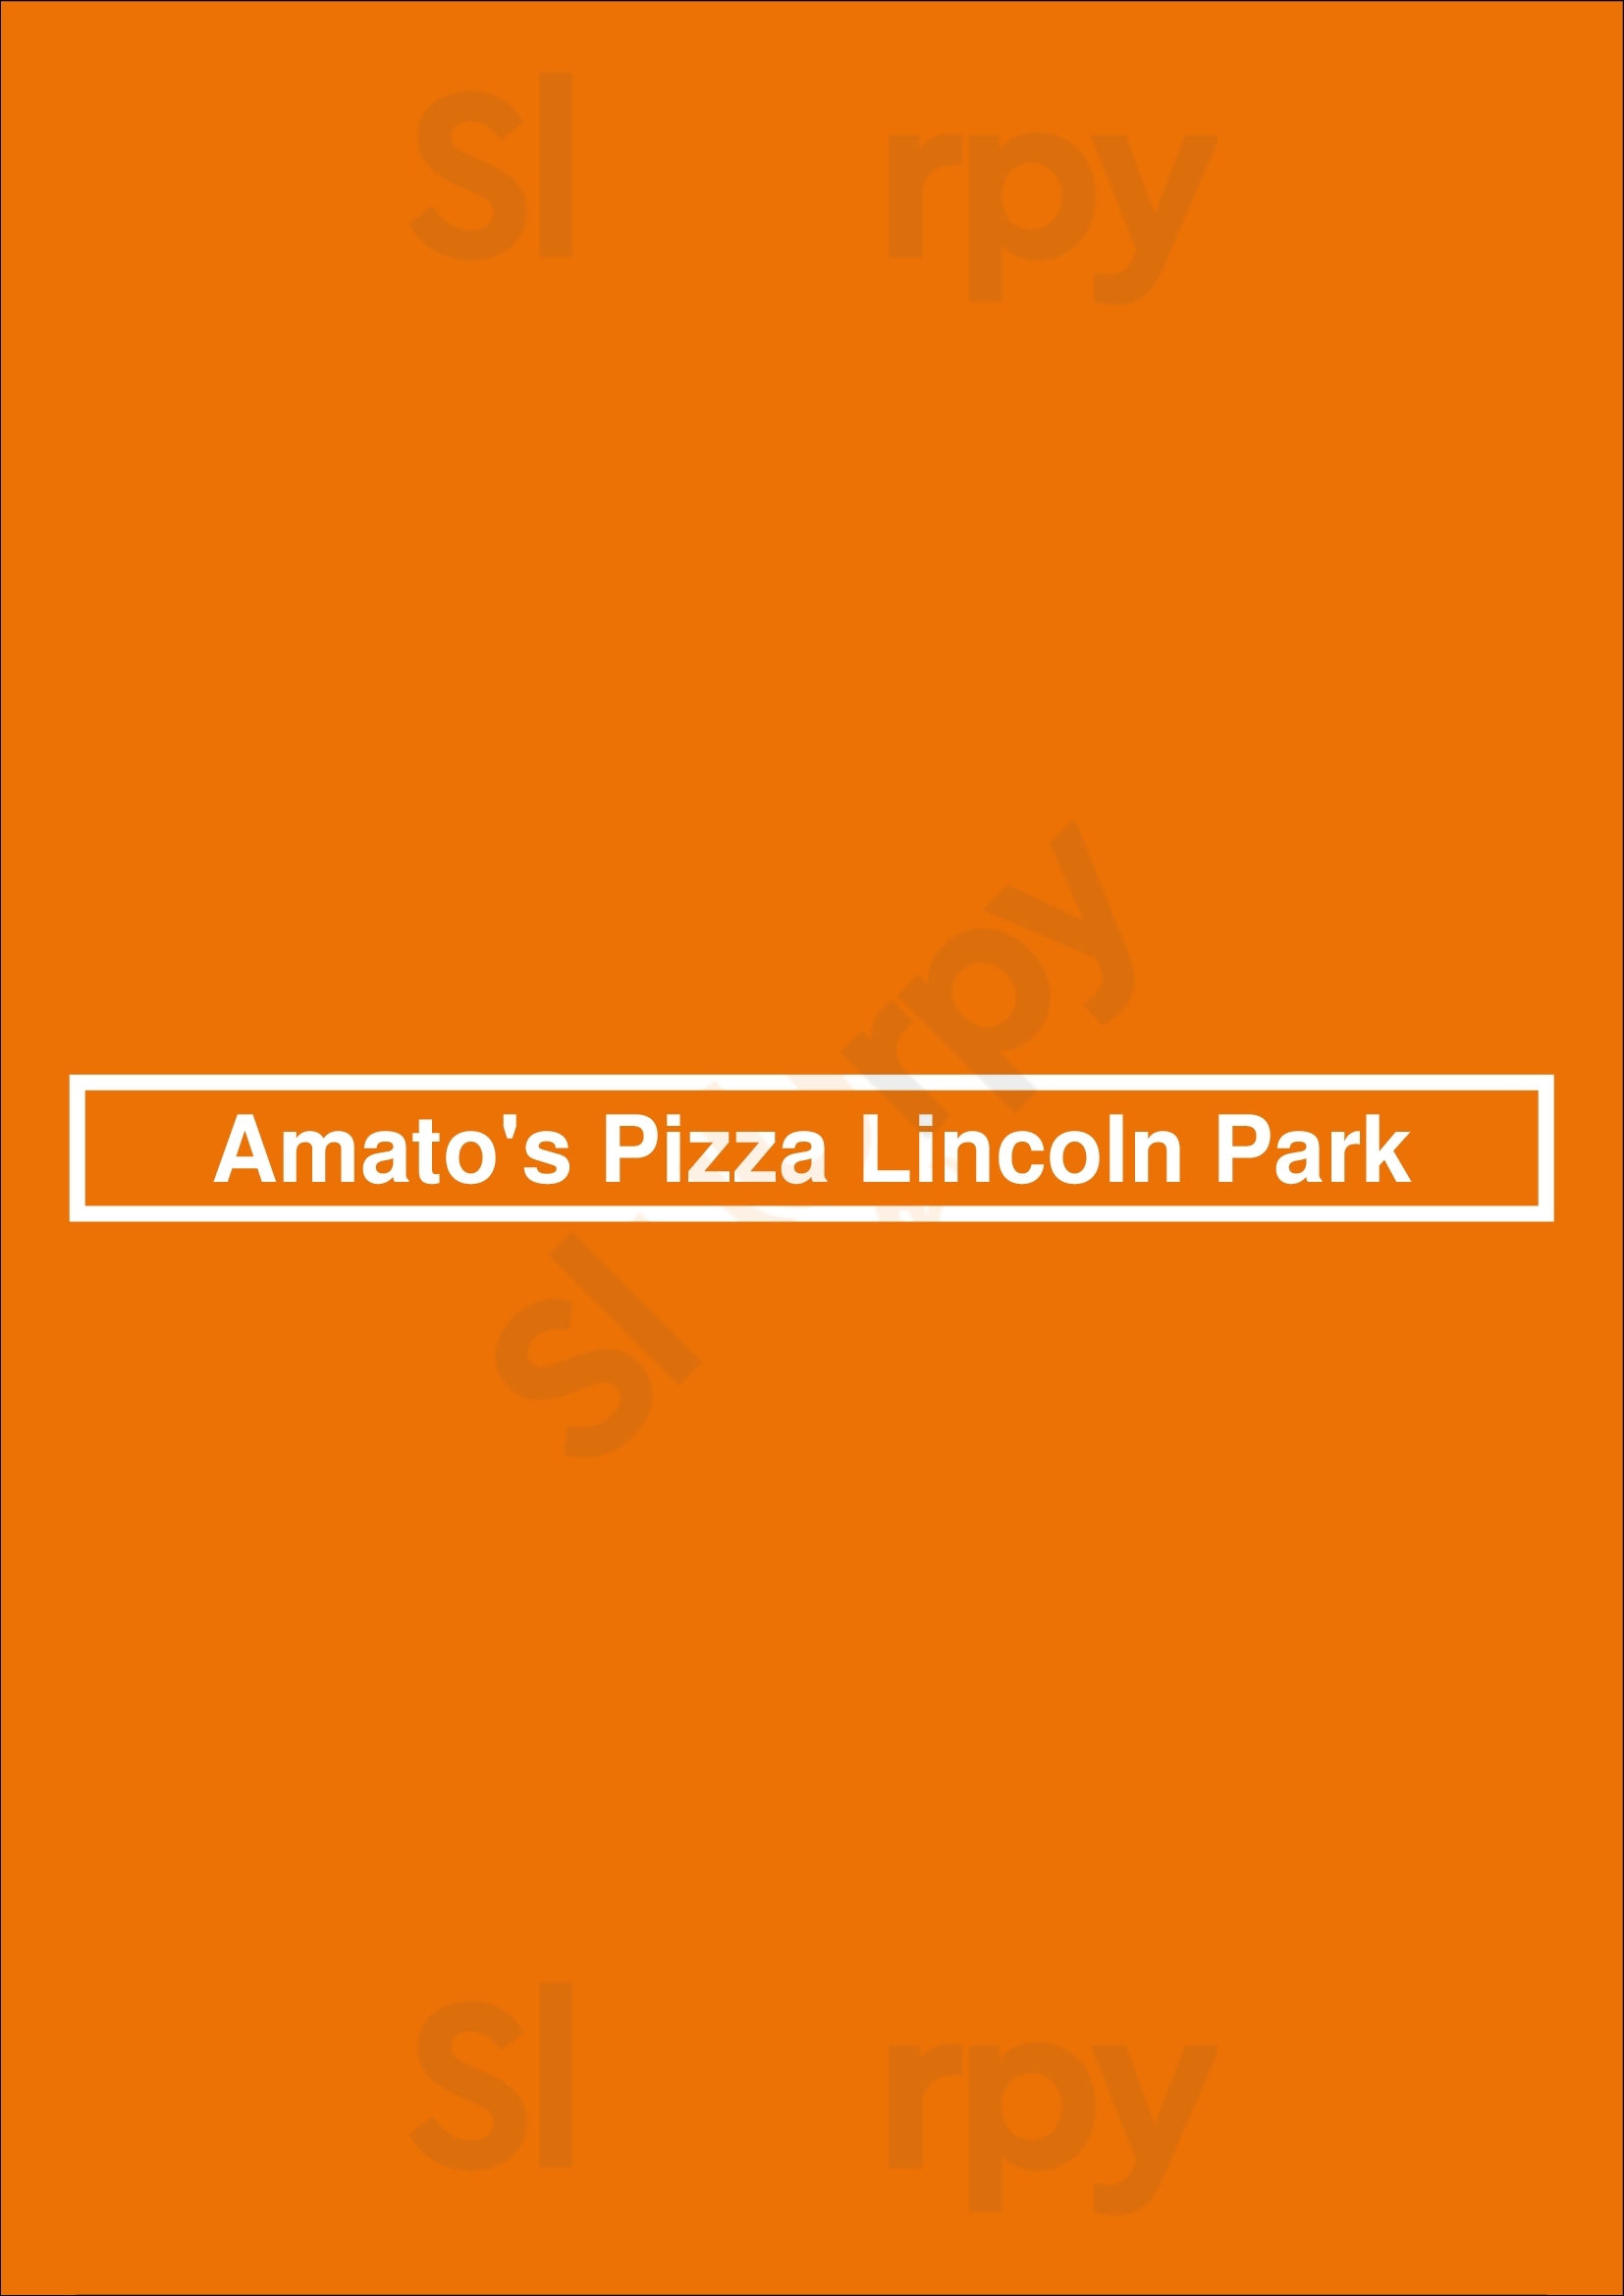 Amato's Pizza Lincoln Park Chicago Menu - 1